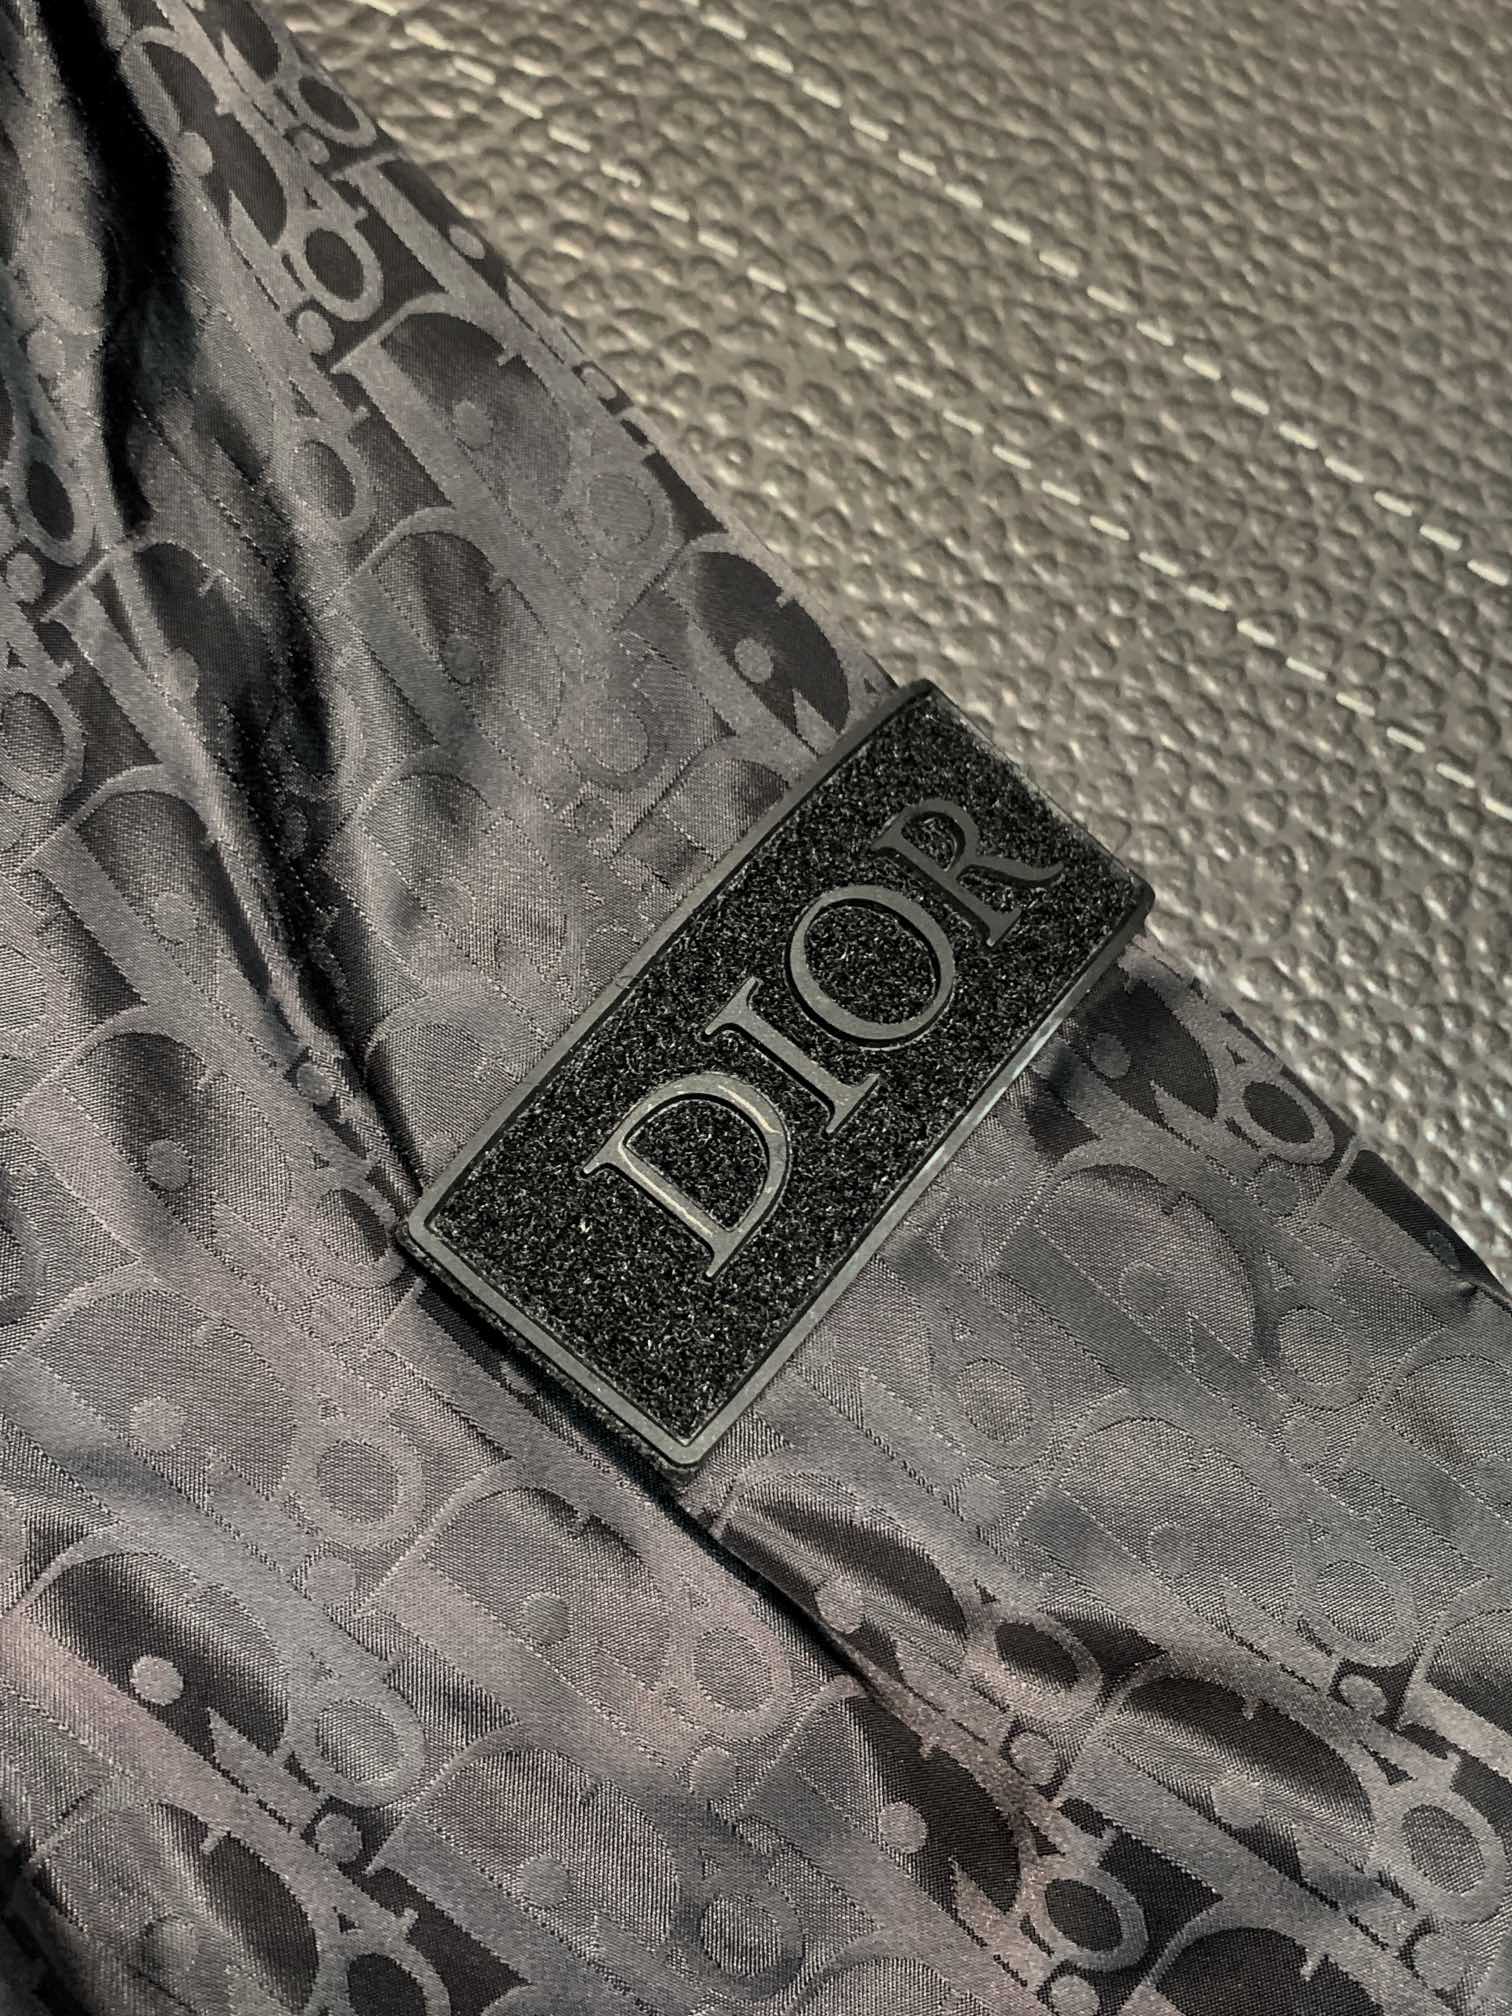 Dior迪奥独家专供最新春秋时尚翻领夹克经典设计感与颜值爆棚的外套品质更是无法挑剔品控可以直接入手不容过